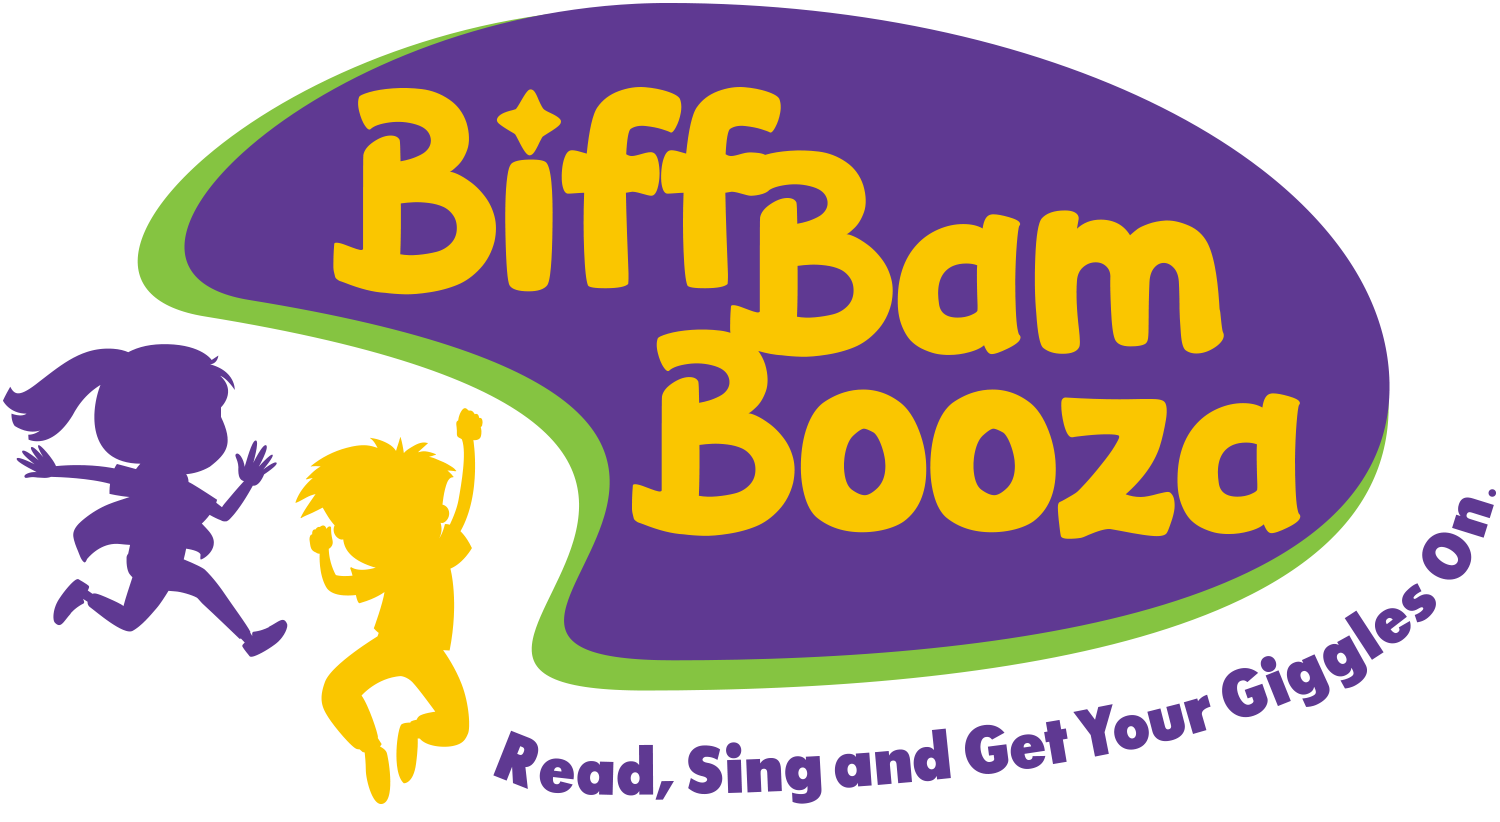 Biff Bam Booza